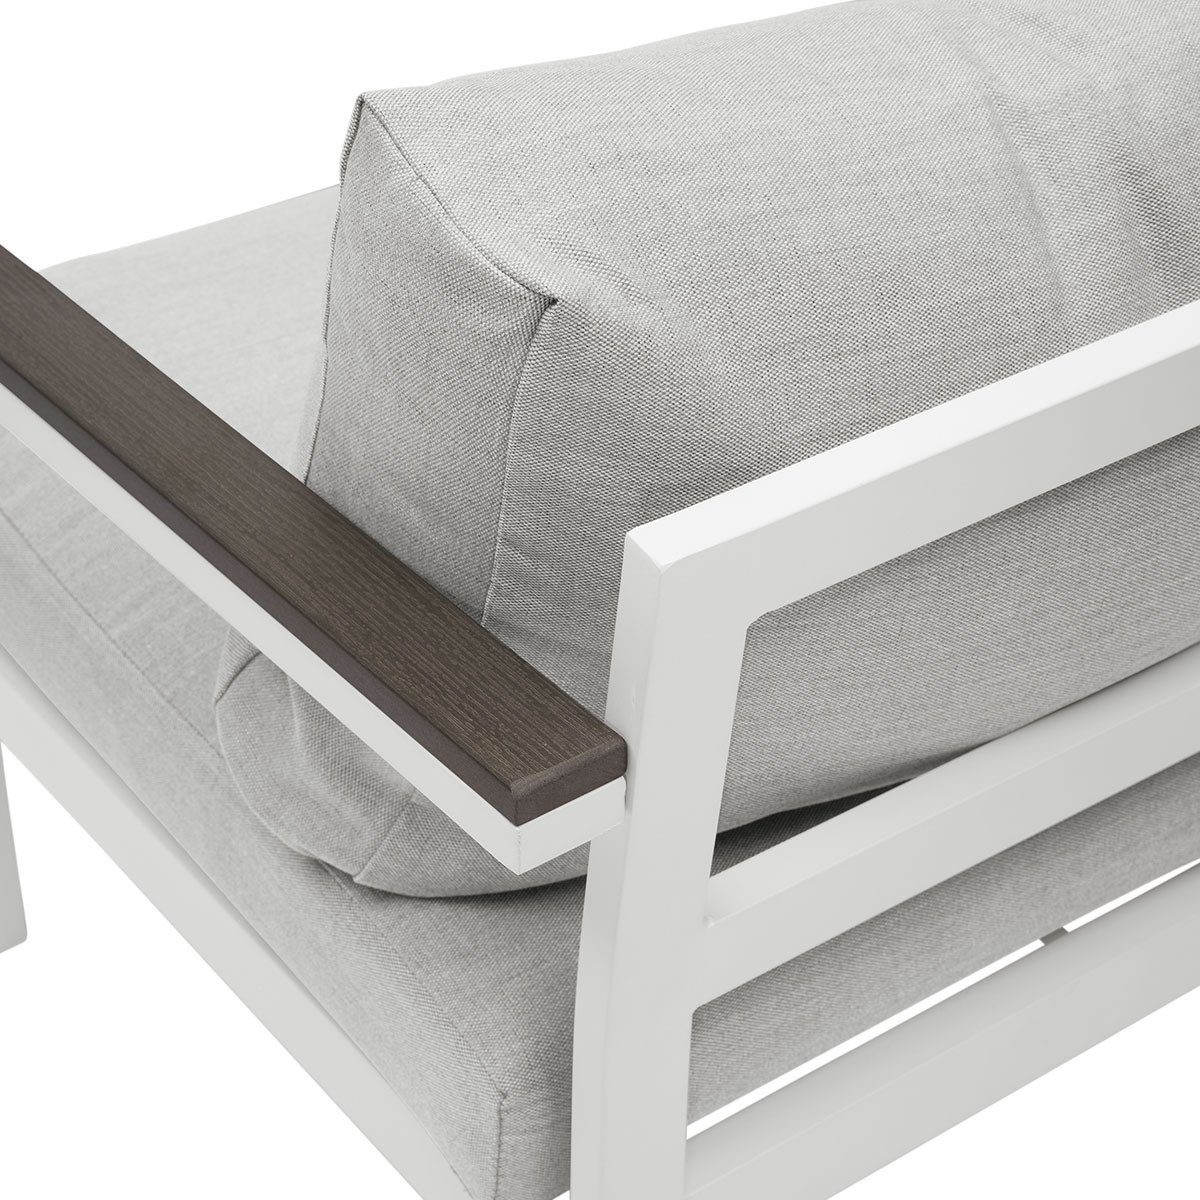 wasserabweisenden Gartenfreude Stoff Ambience mit Sessel Kissen Aluminium (1-St), Weiß / Gartentisch Grau